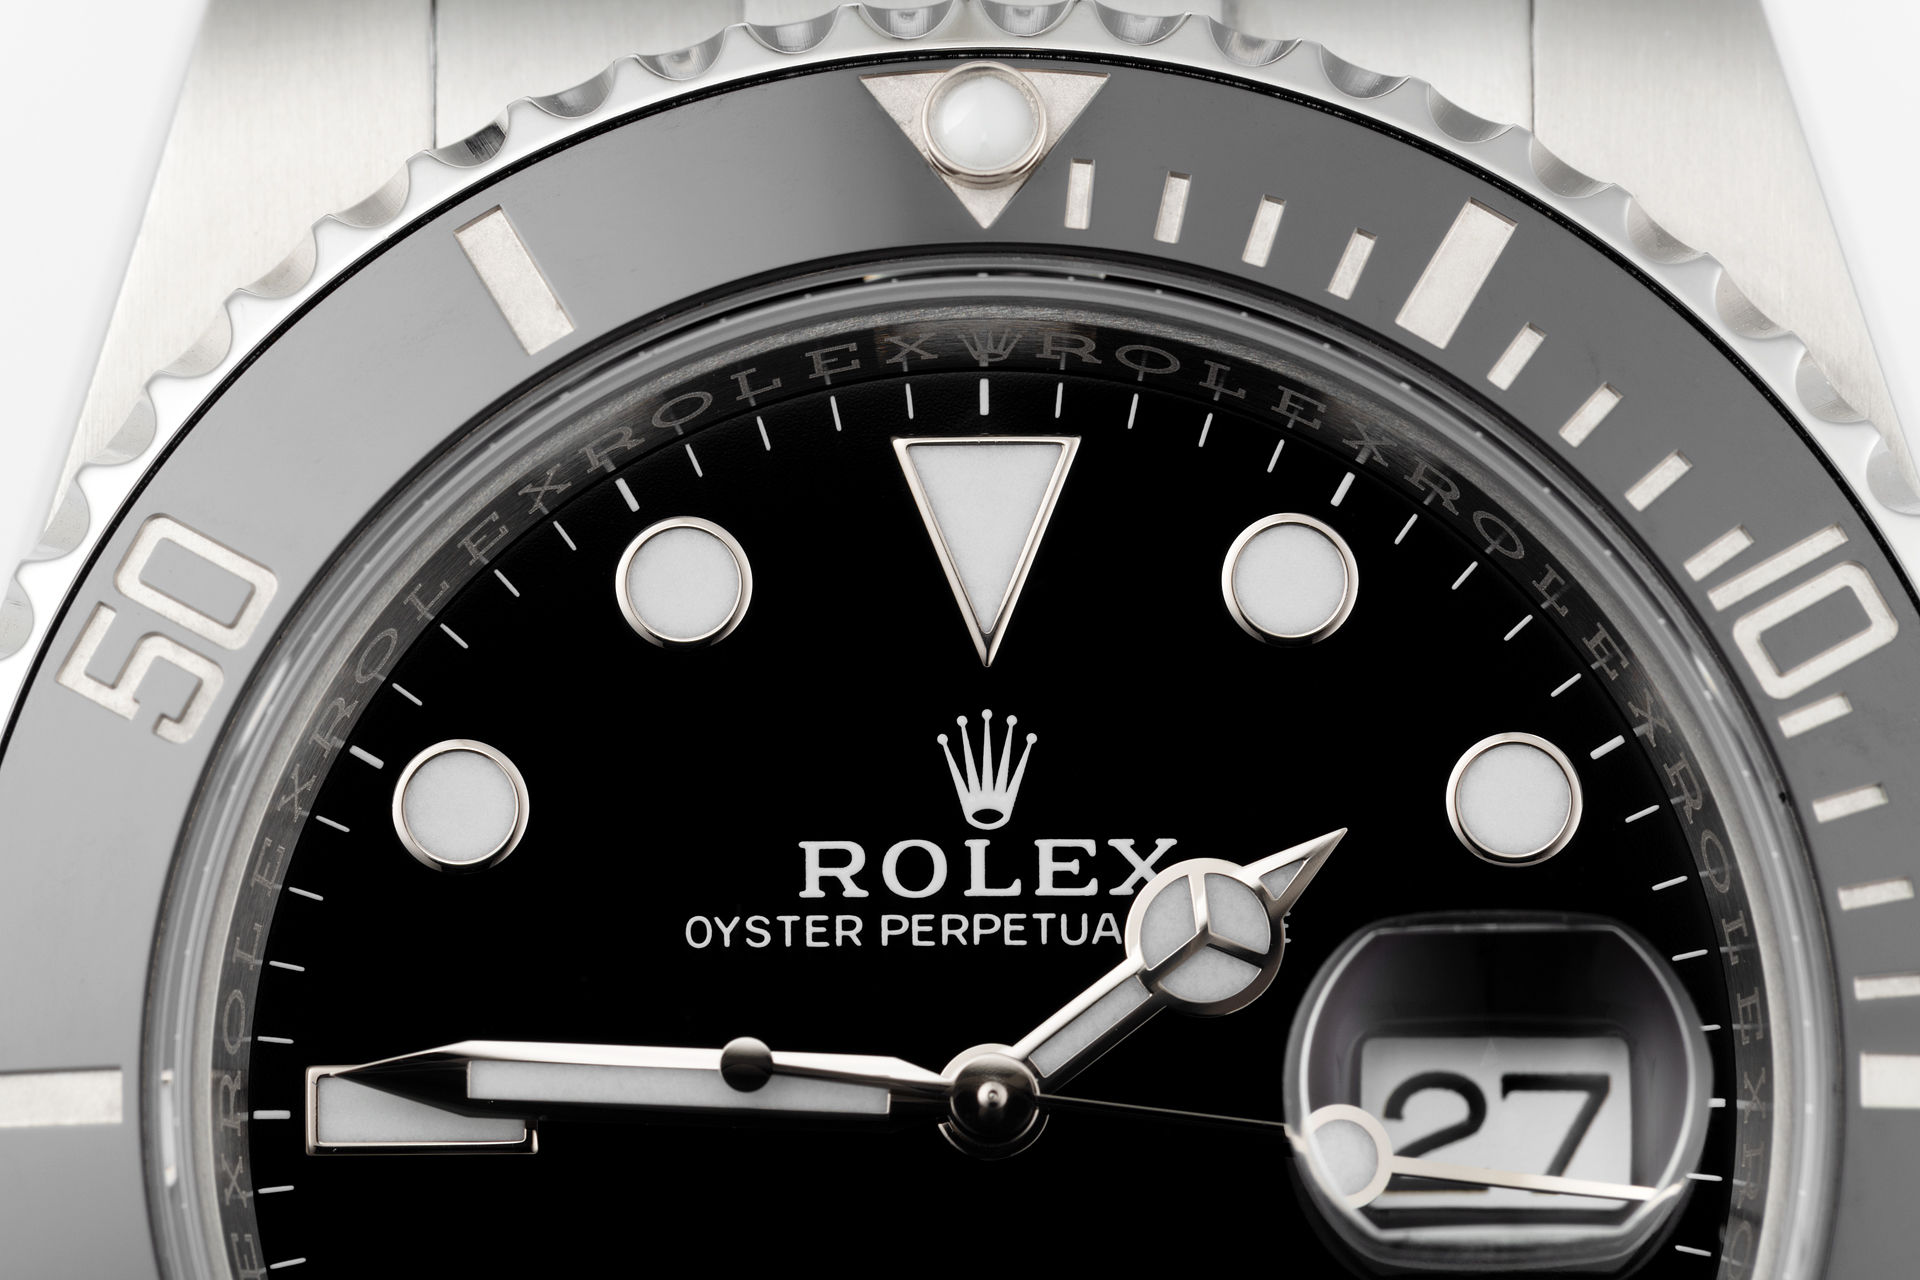 ref 116610LN | 5 Year Rolex Warranty  | Rolex Submariner Date